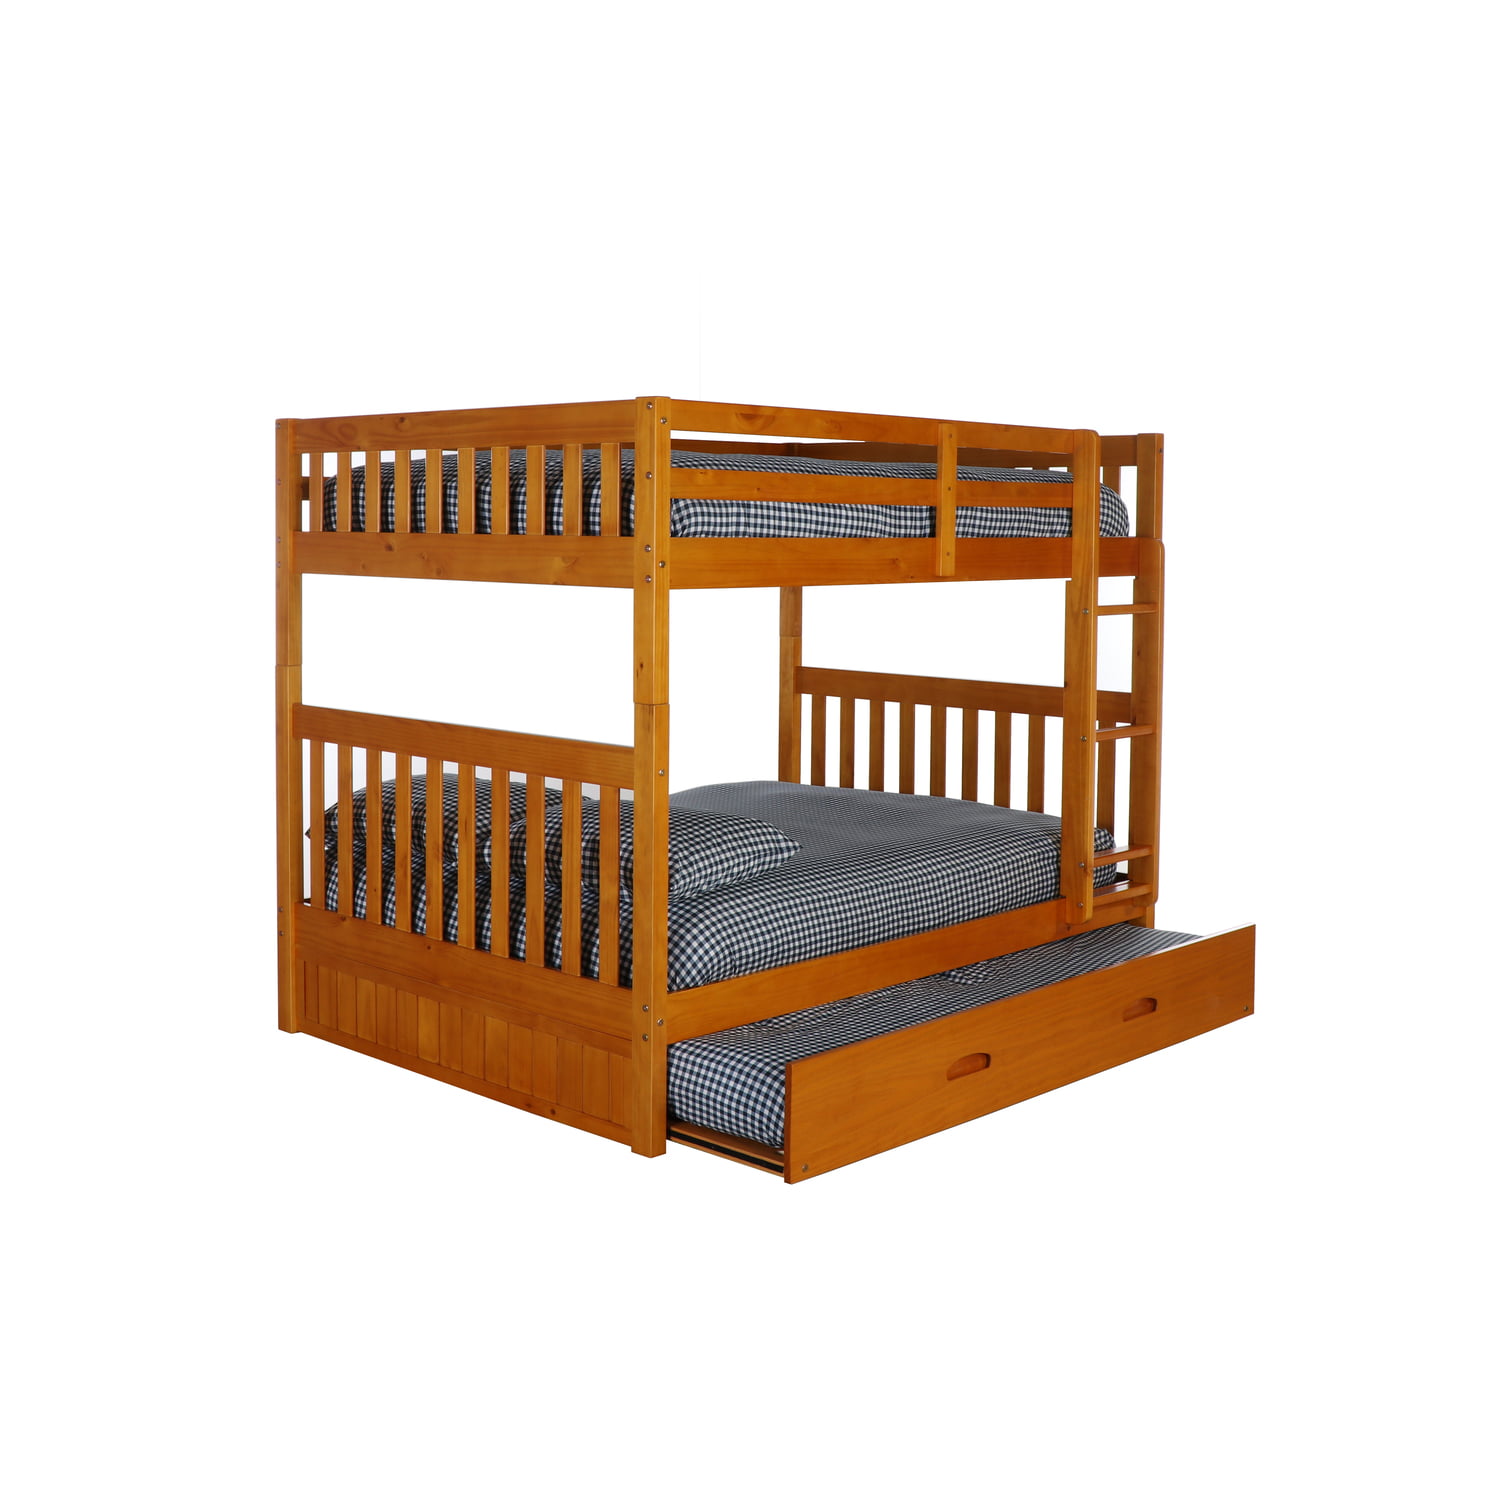 American Furniture Classics Model 2118, 5 Foot Bunk Beds